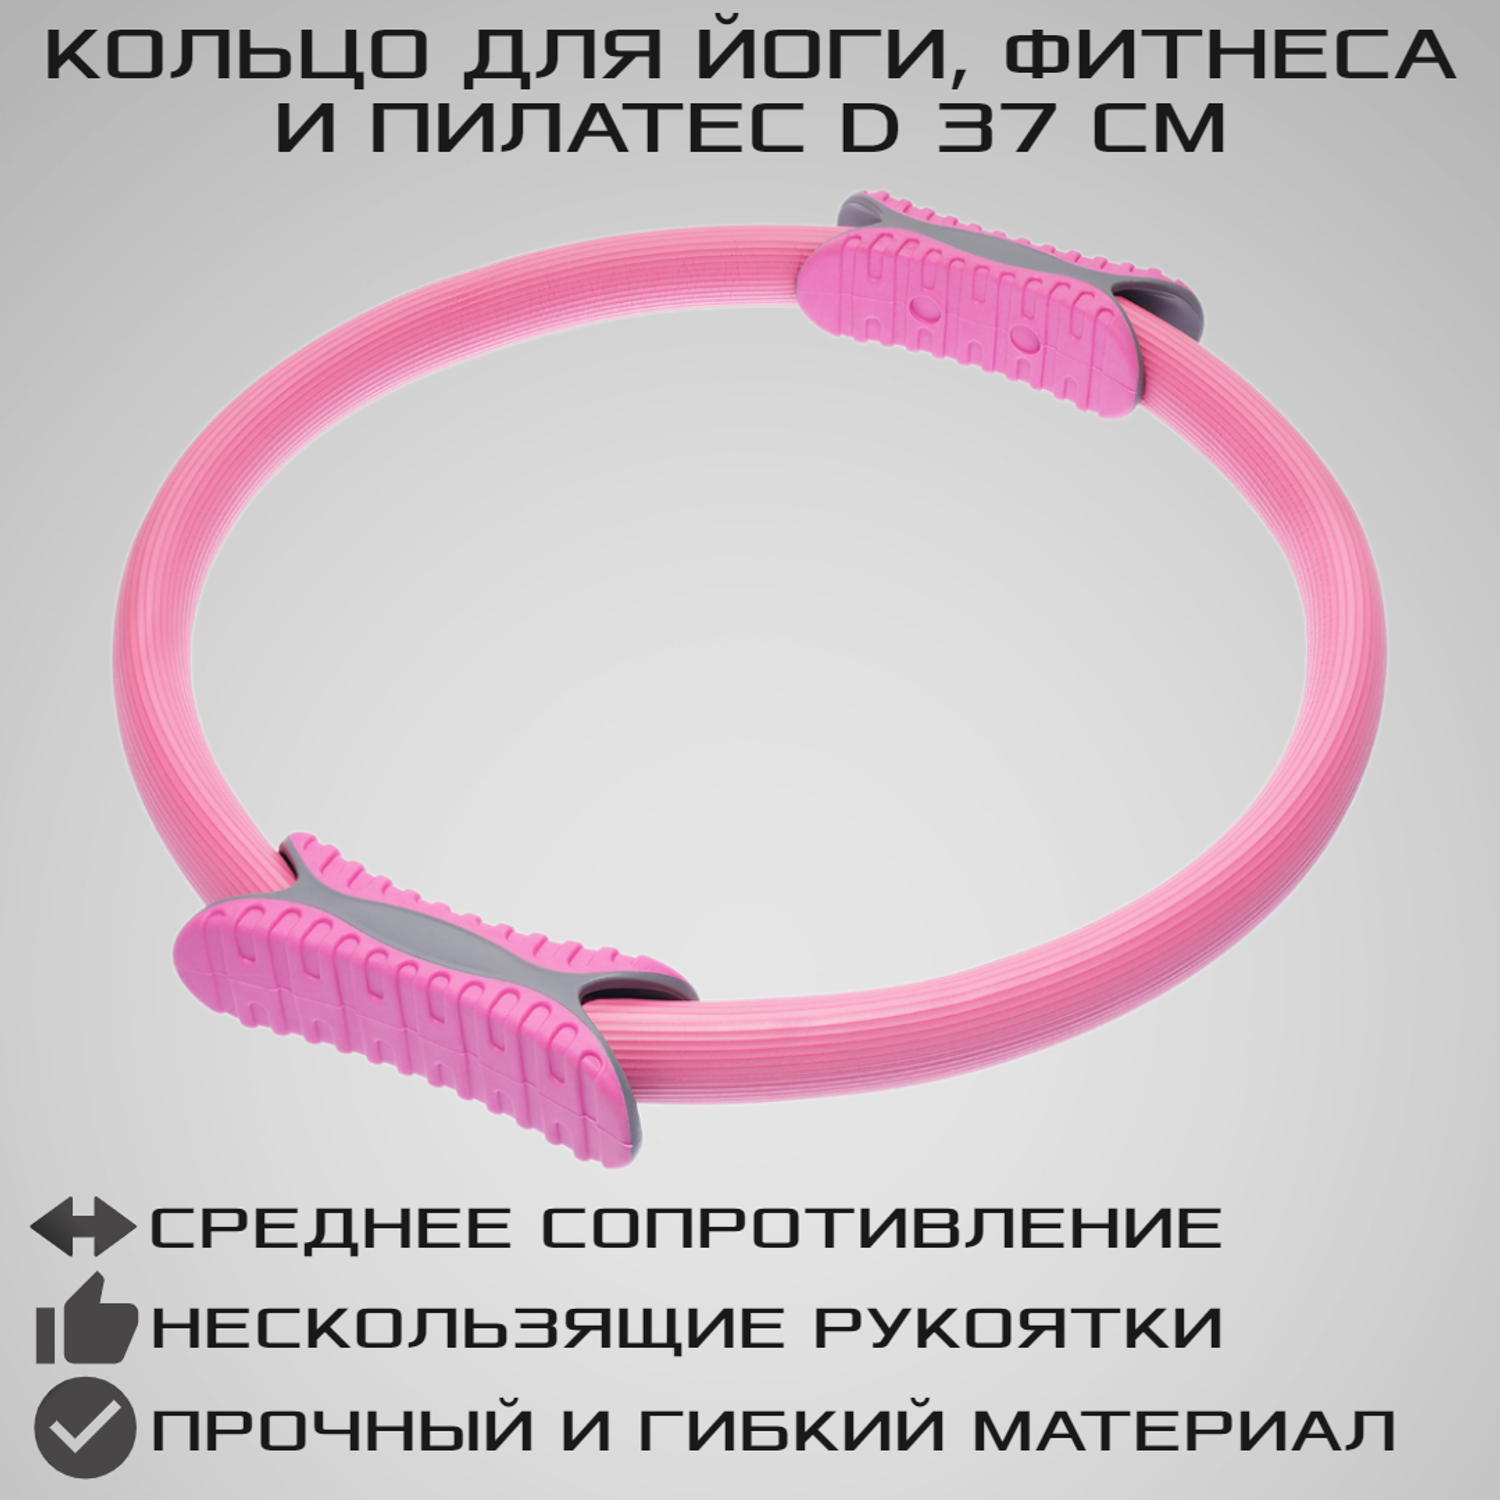 Изотоническое кольцо STRONG BODY обруч для йоги и пилатес d 38 см розовое - фото 1